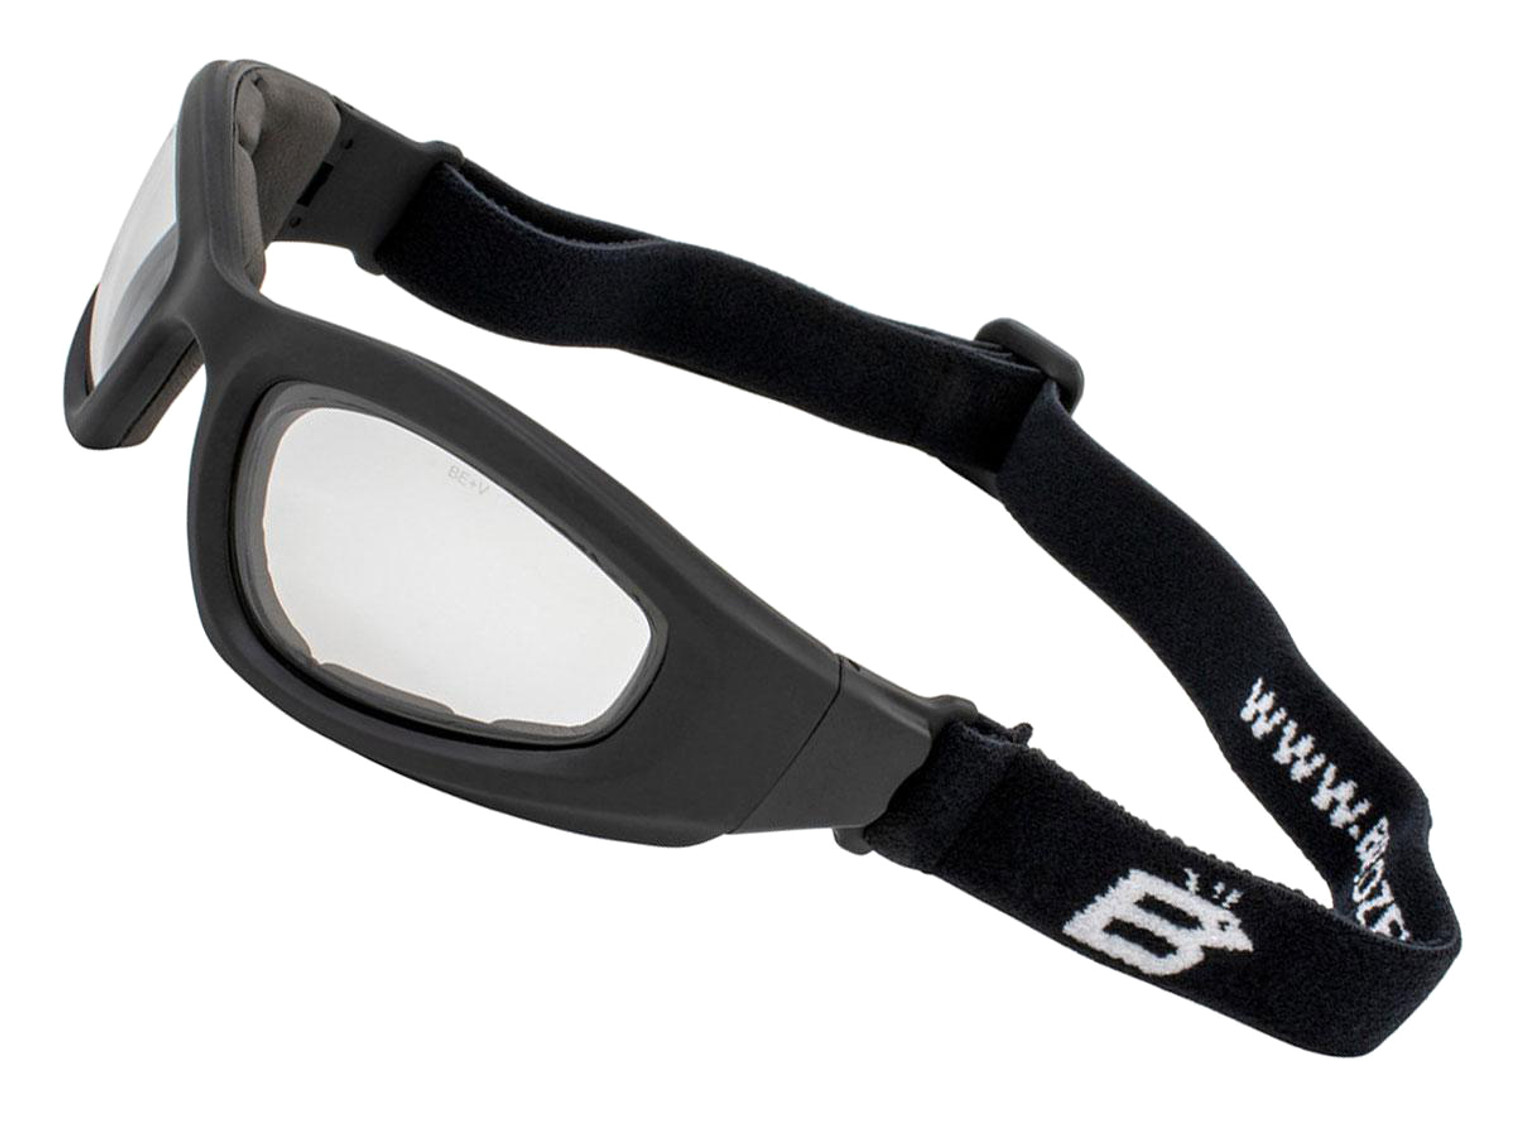 Birdz Eyewear Soar Photochromic ANSI Z78.1 Goggles